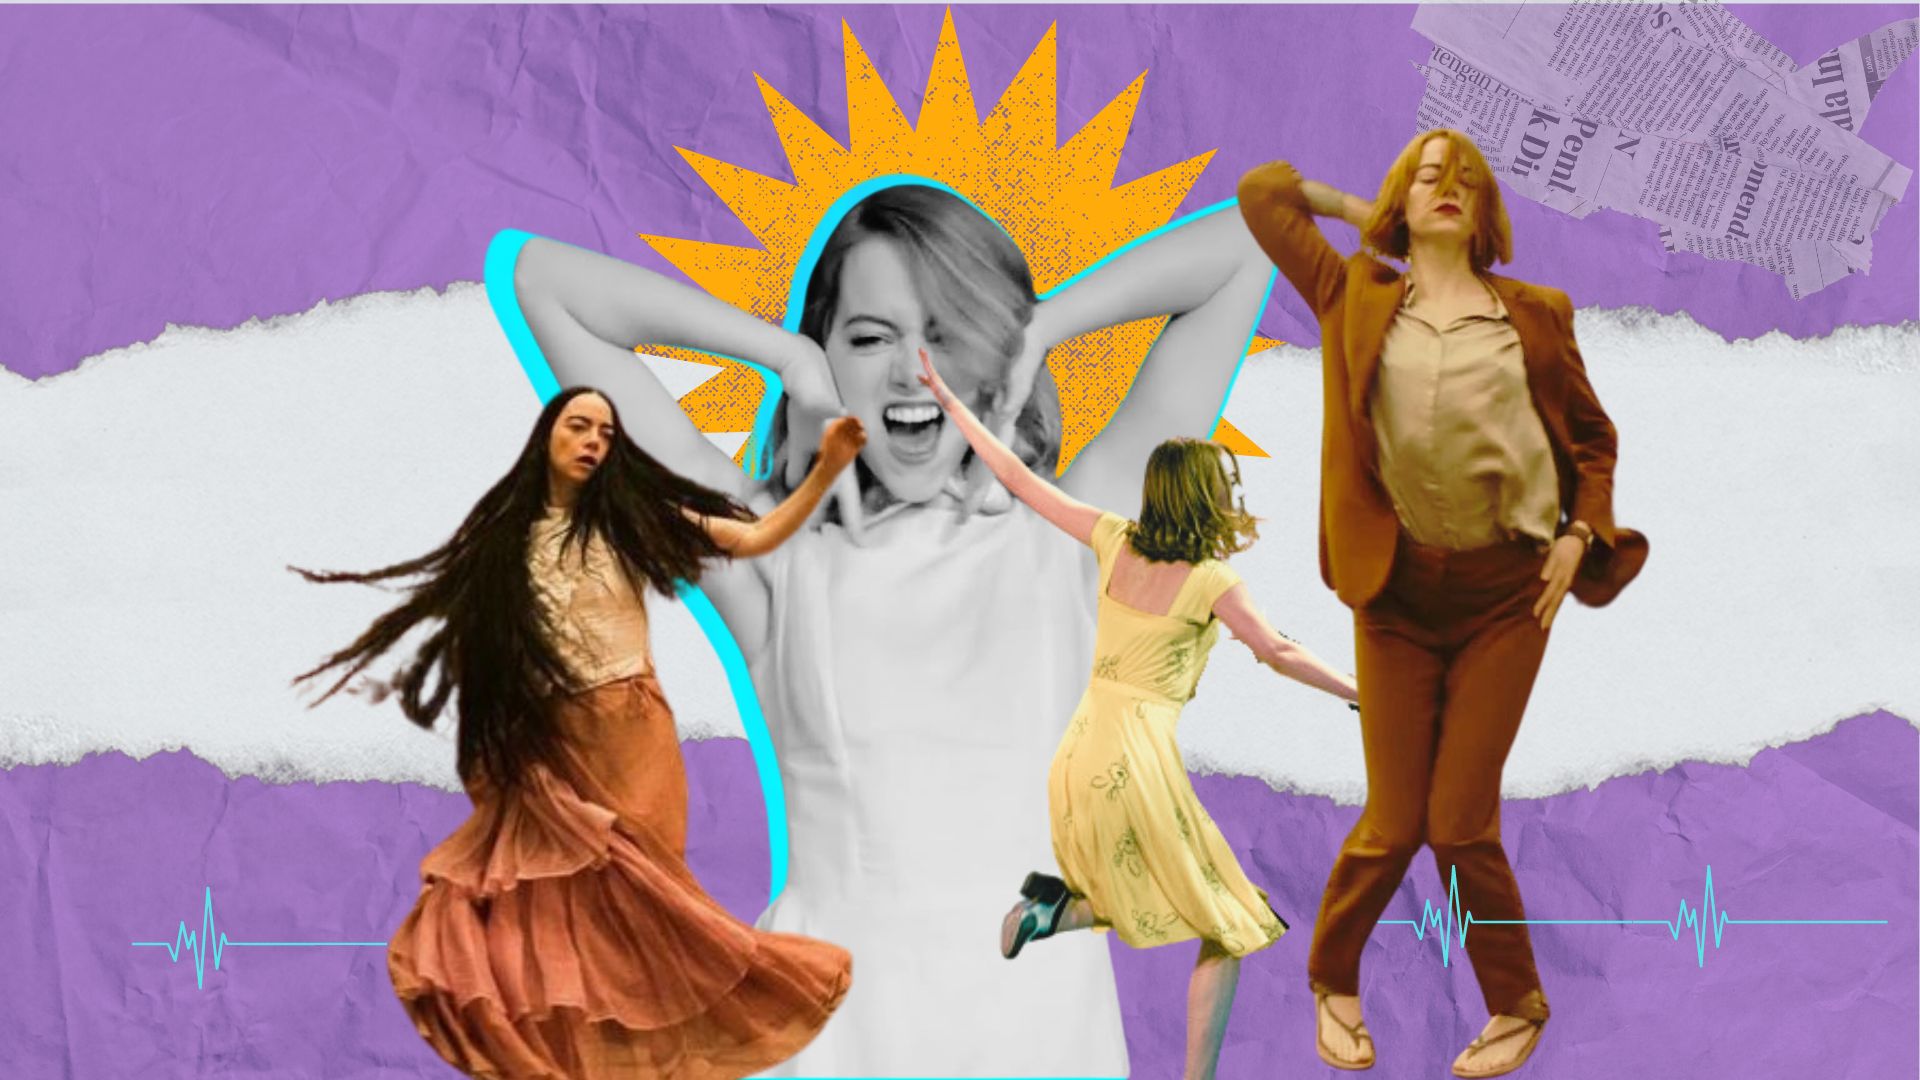 Έμμα Στόουν: Από τον αυστηρό χορό του La La Land στην απελευθέρωση του Poor Things και του Kinds of Kindness